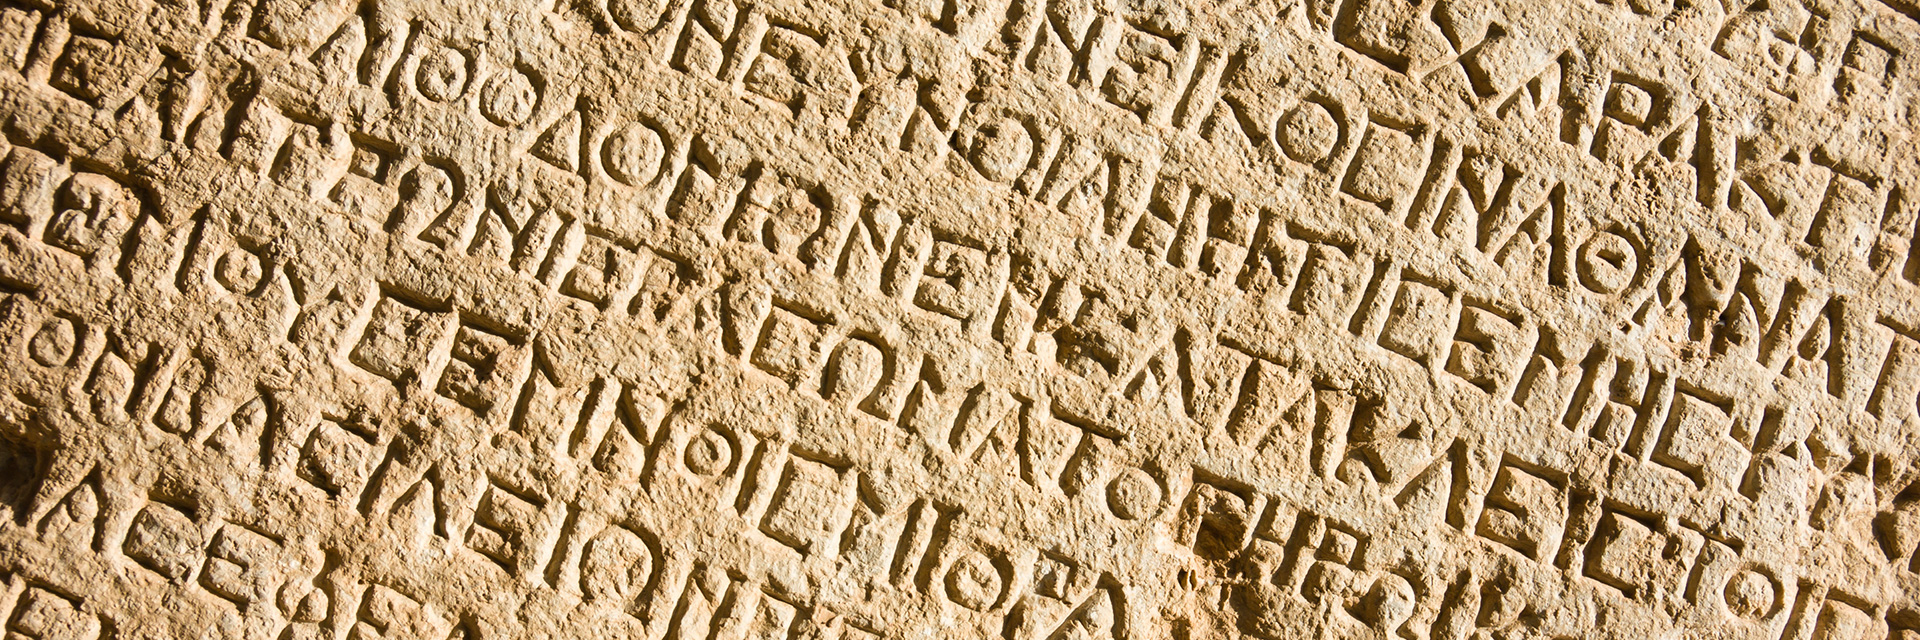 Древнегреческий алфавит на Камне